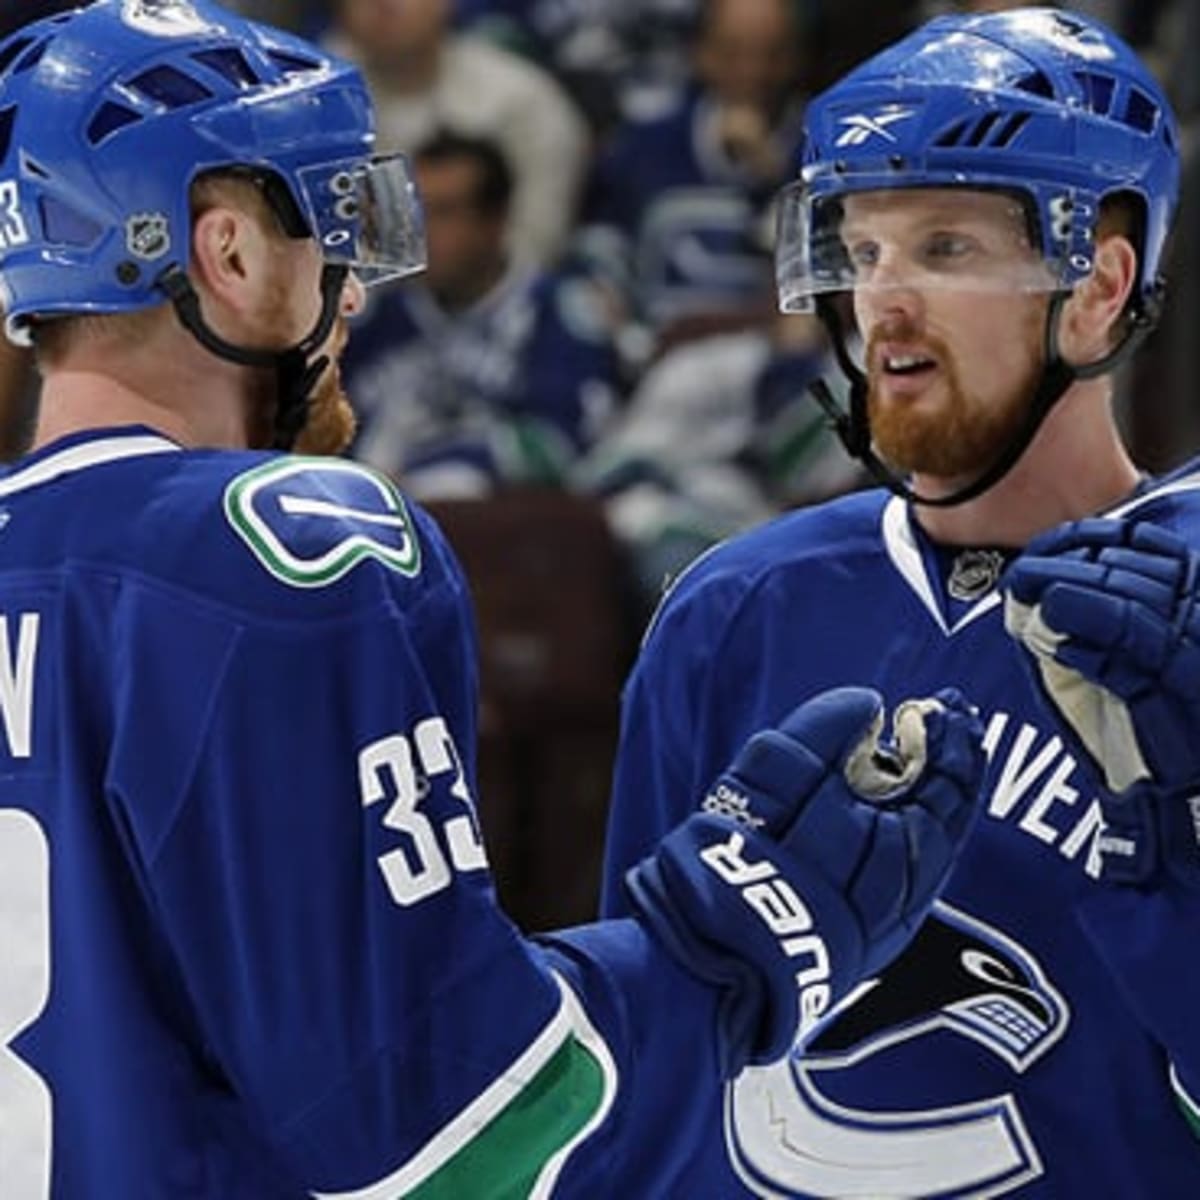 Analysis: Niedermayer's return puts Ducks in trade mode - The Hockey News